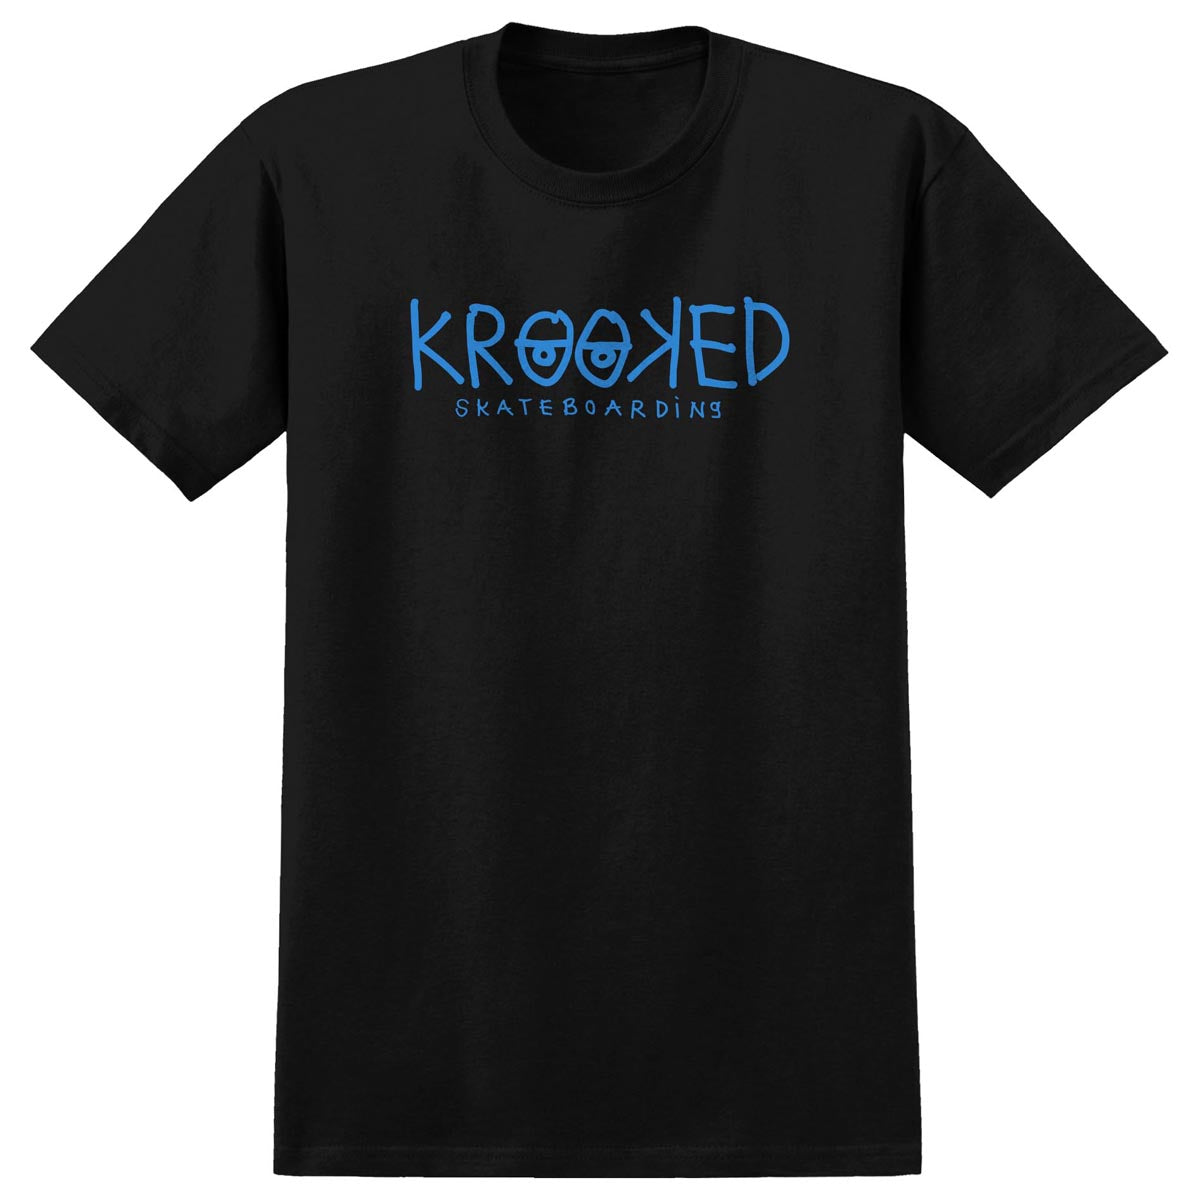 Krooked Eyes T-Shirt - Black/Blue image 1